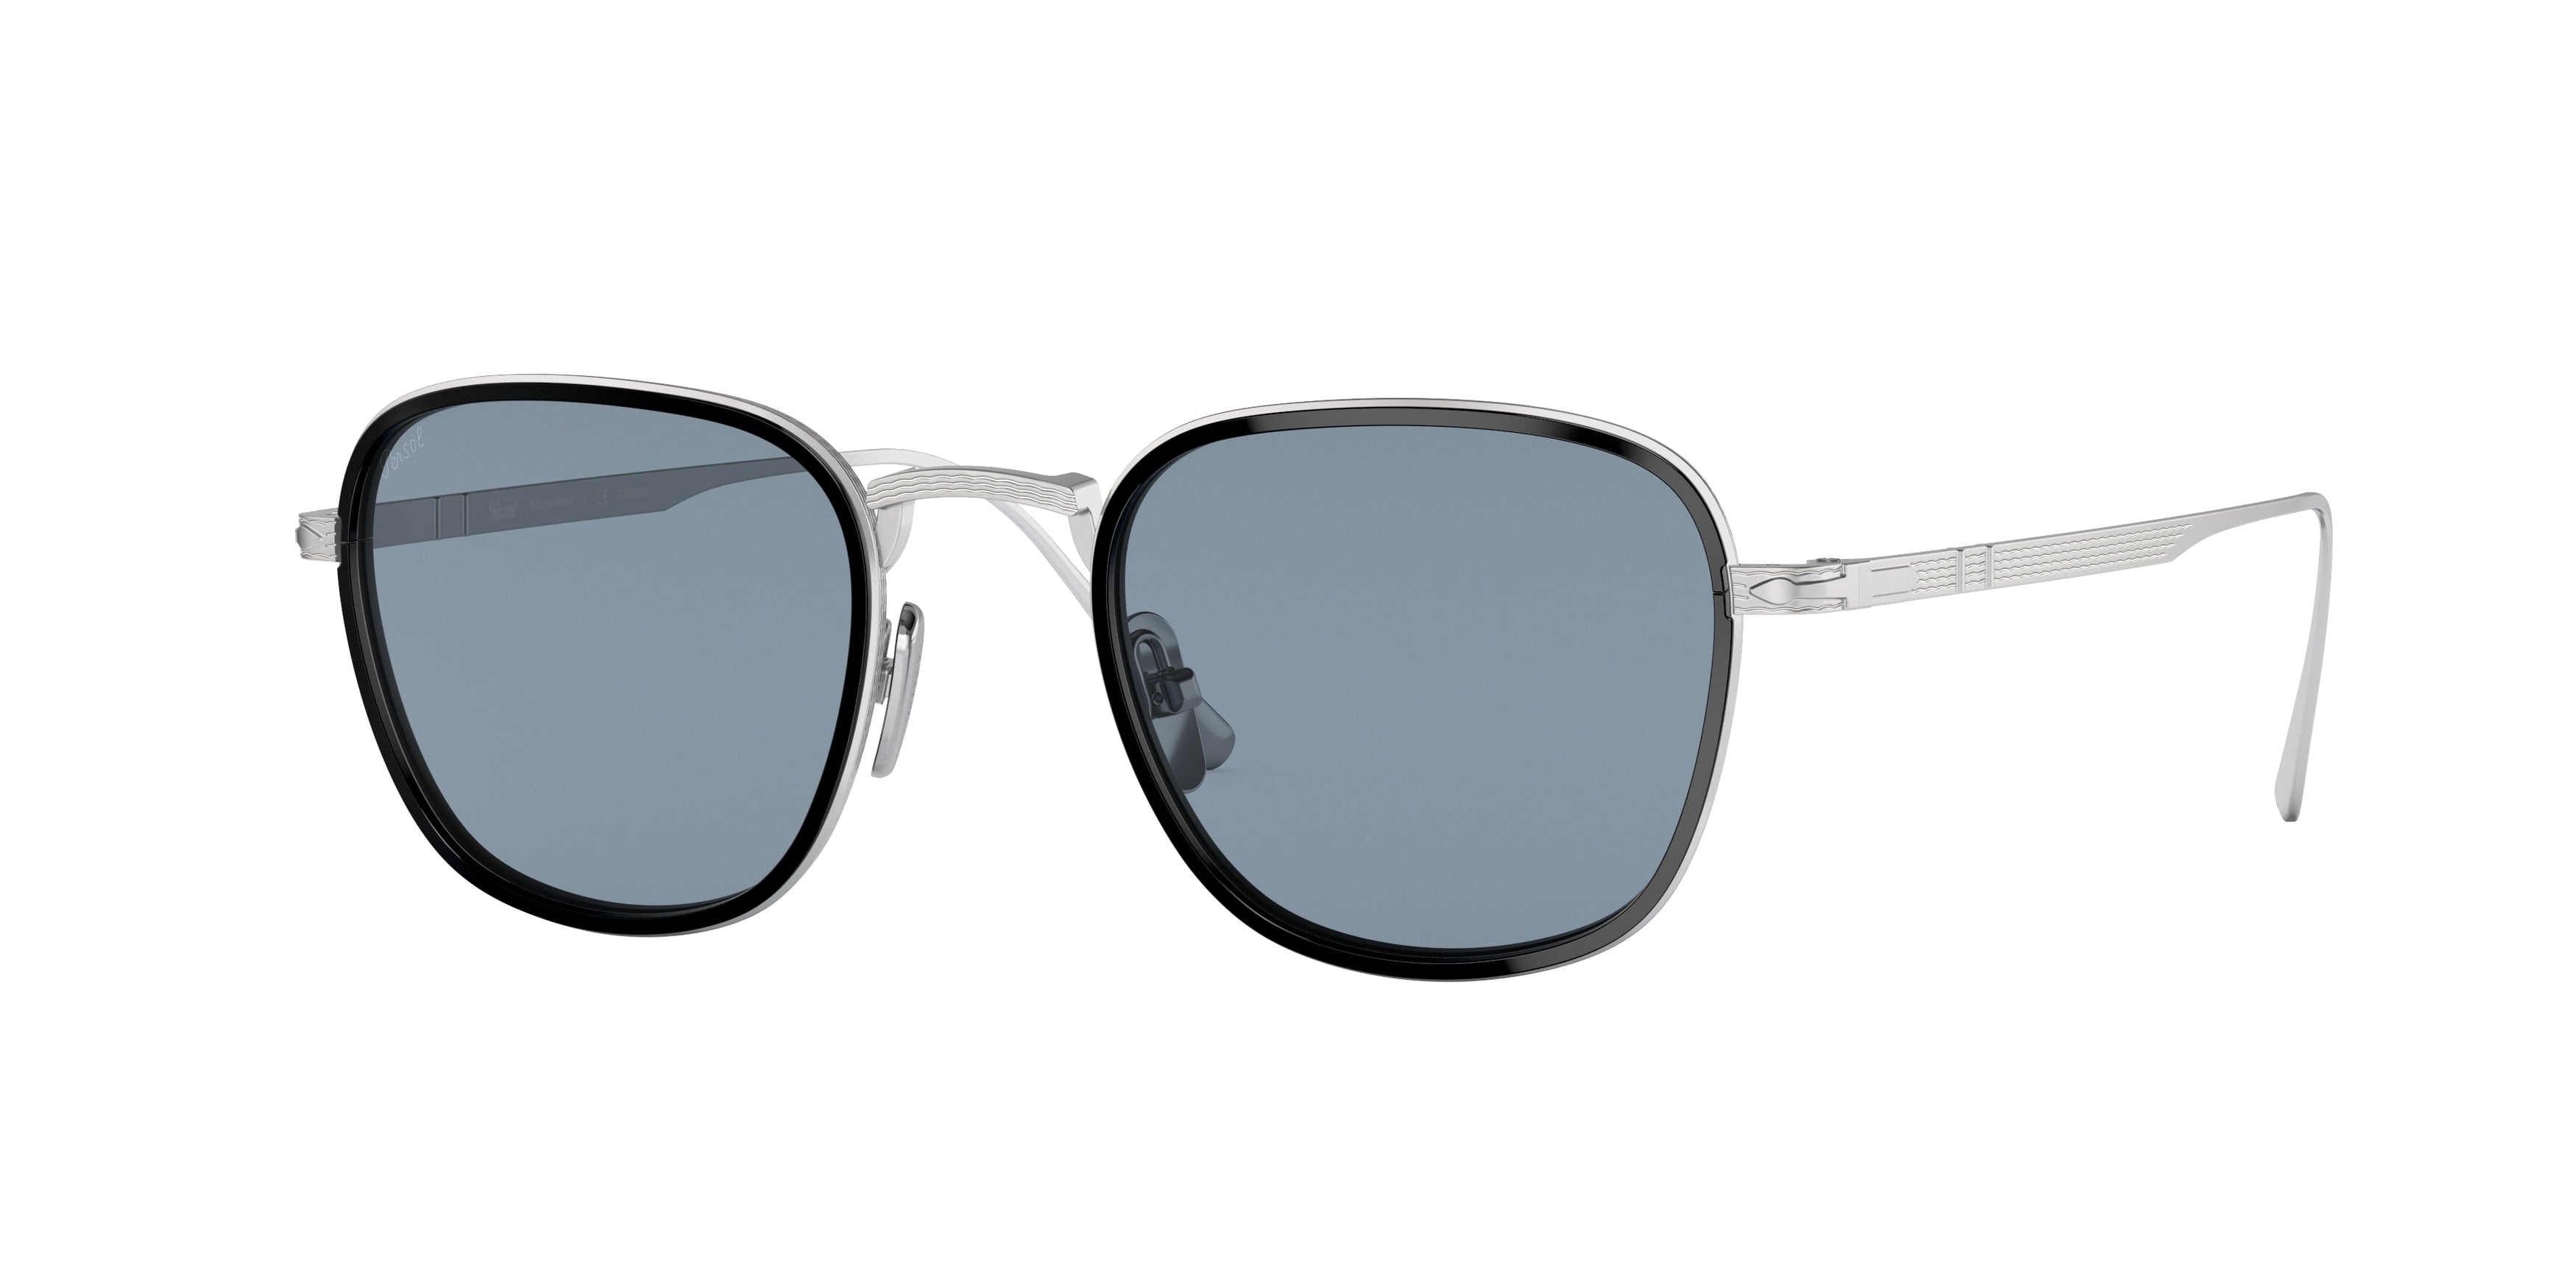 Persol PO5007ST Square Sunglasses  800656-Silver/Black 47-145-21 - Color Map Silver